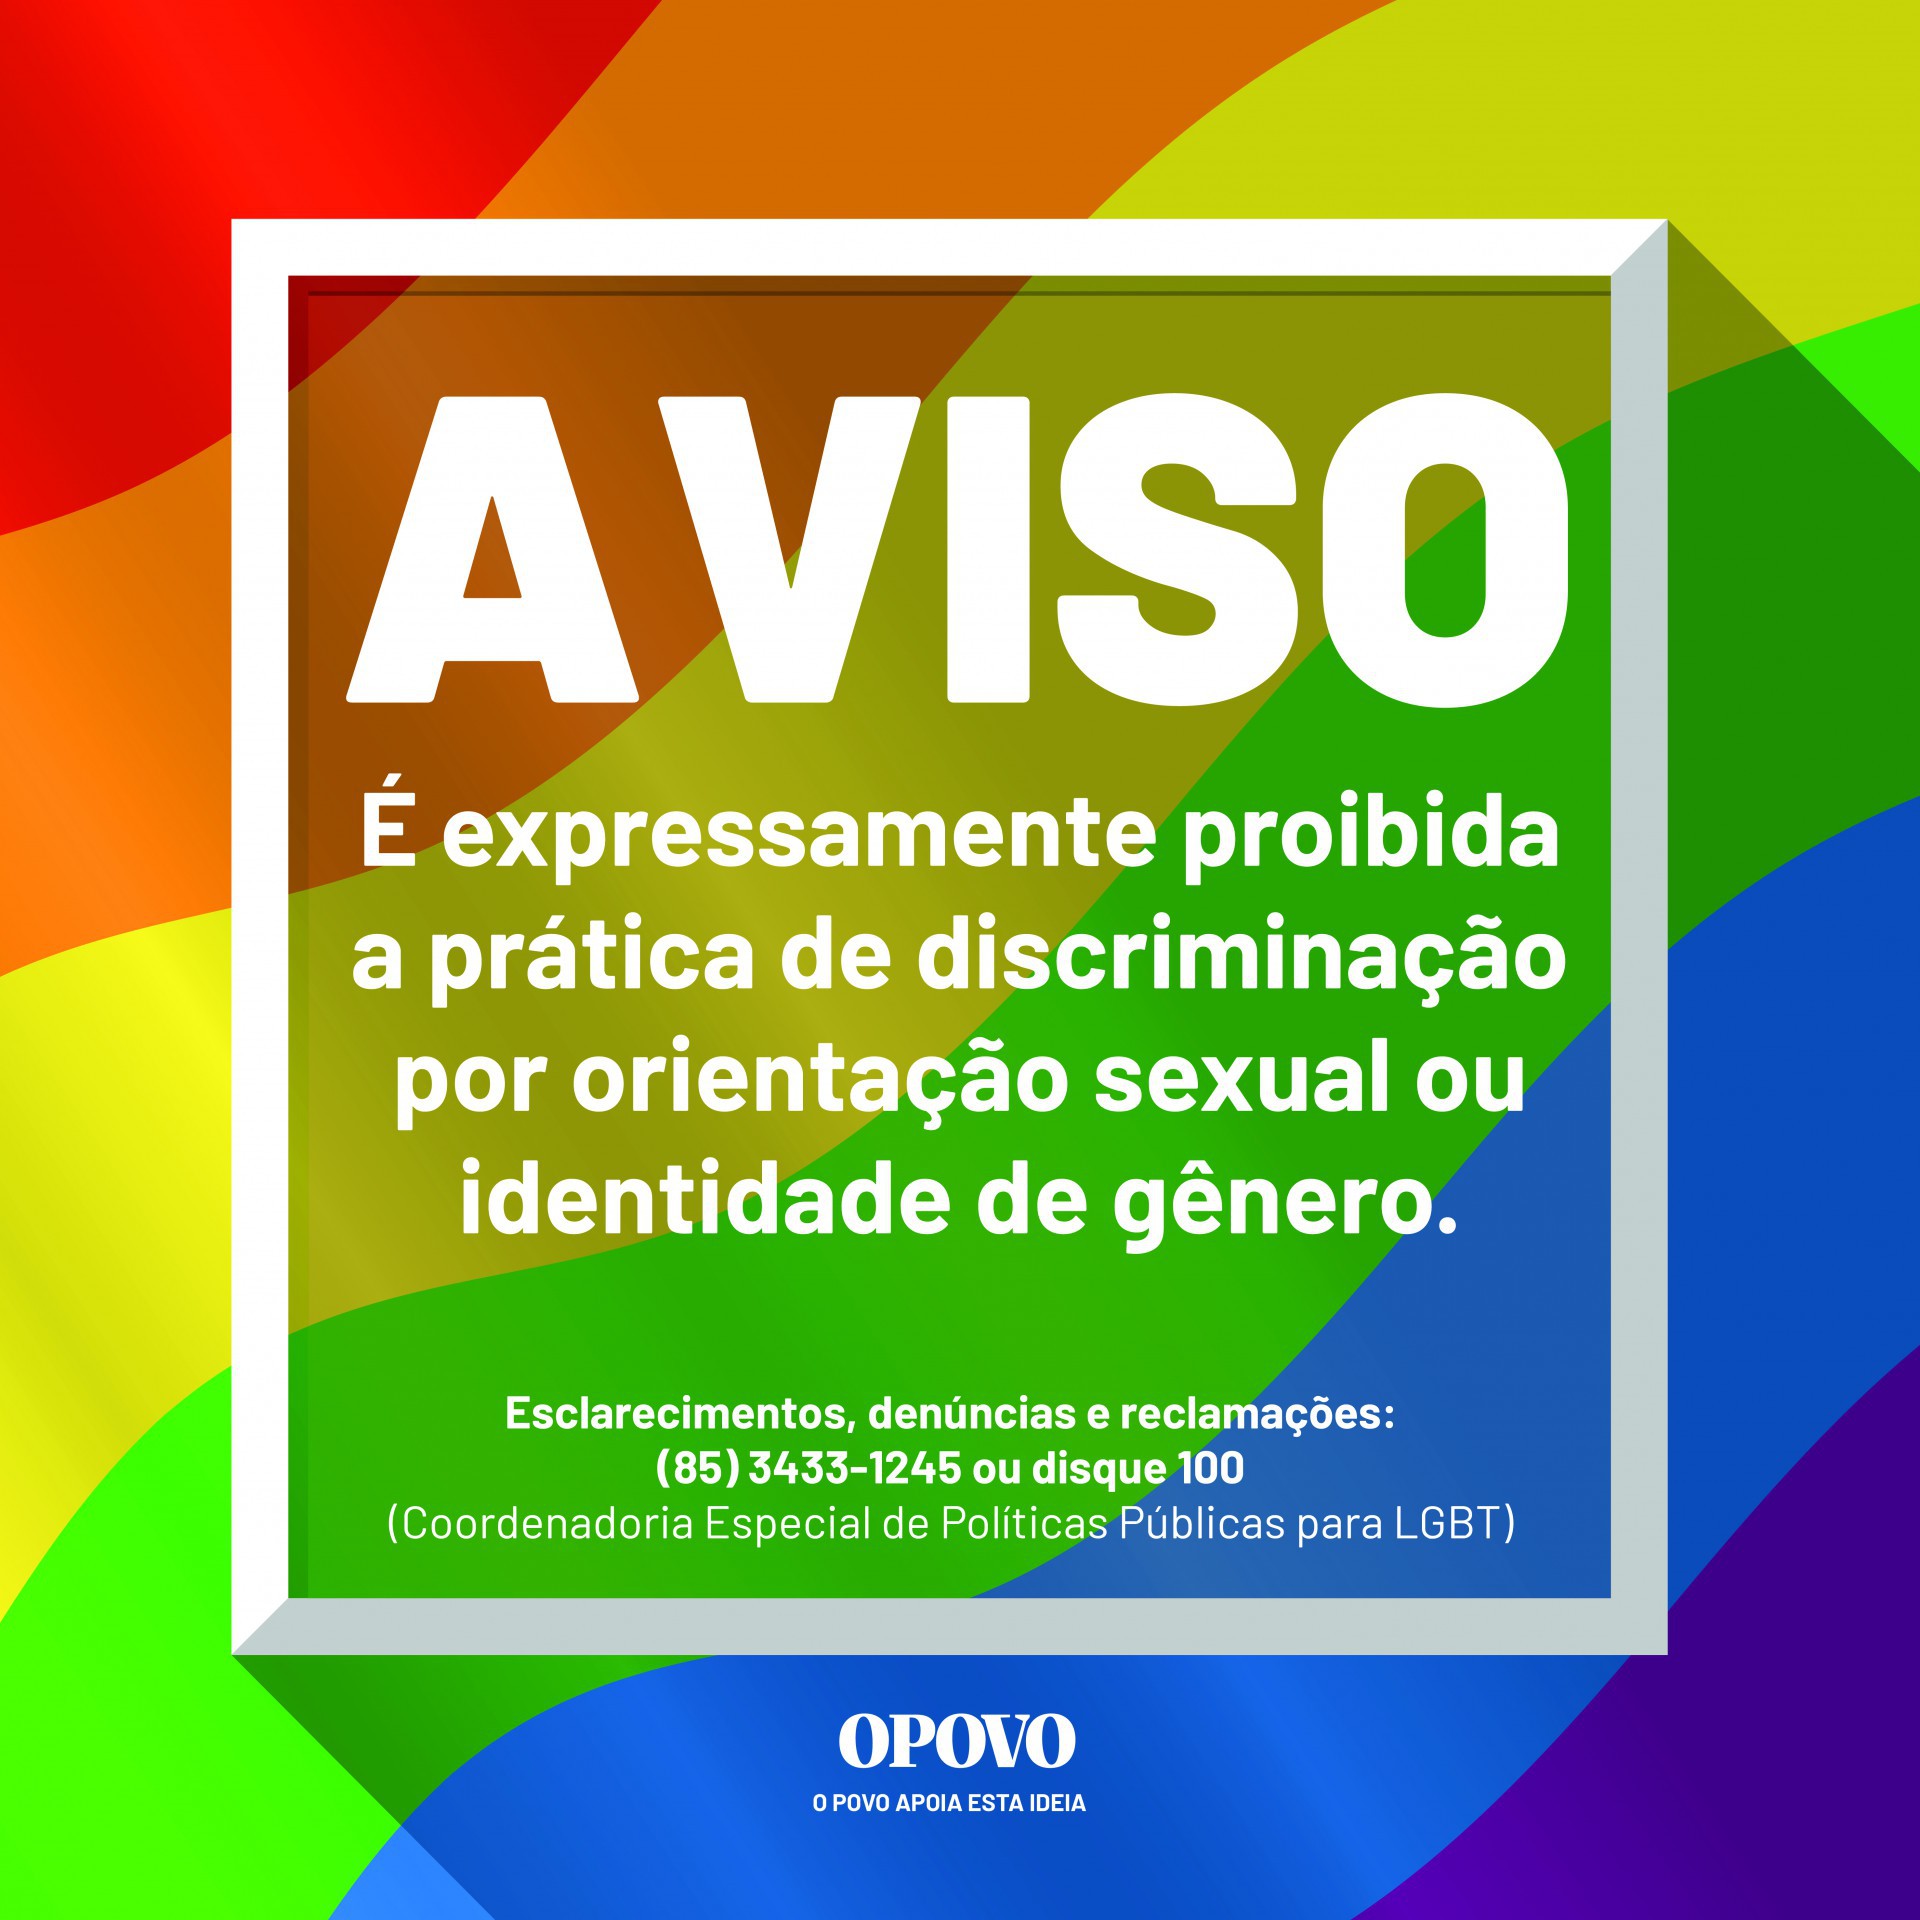 Placas contra LGBTfobia devem ser fixadas em todos os estabelecimentos públicos e privados do Ceará